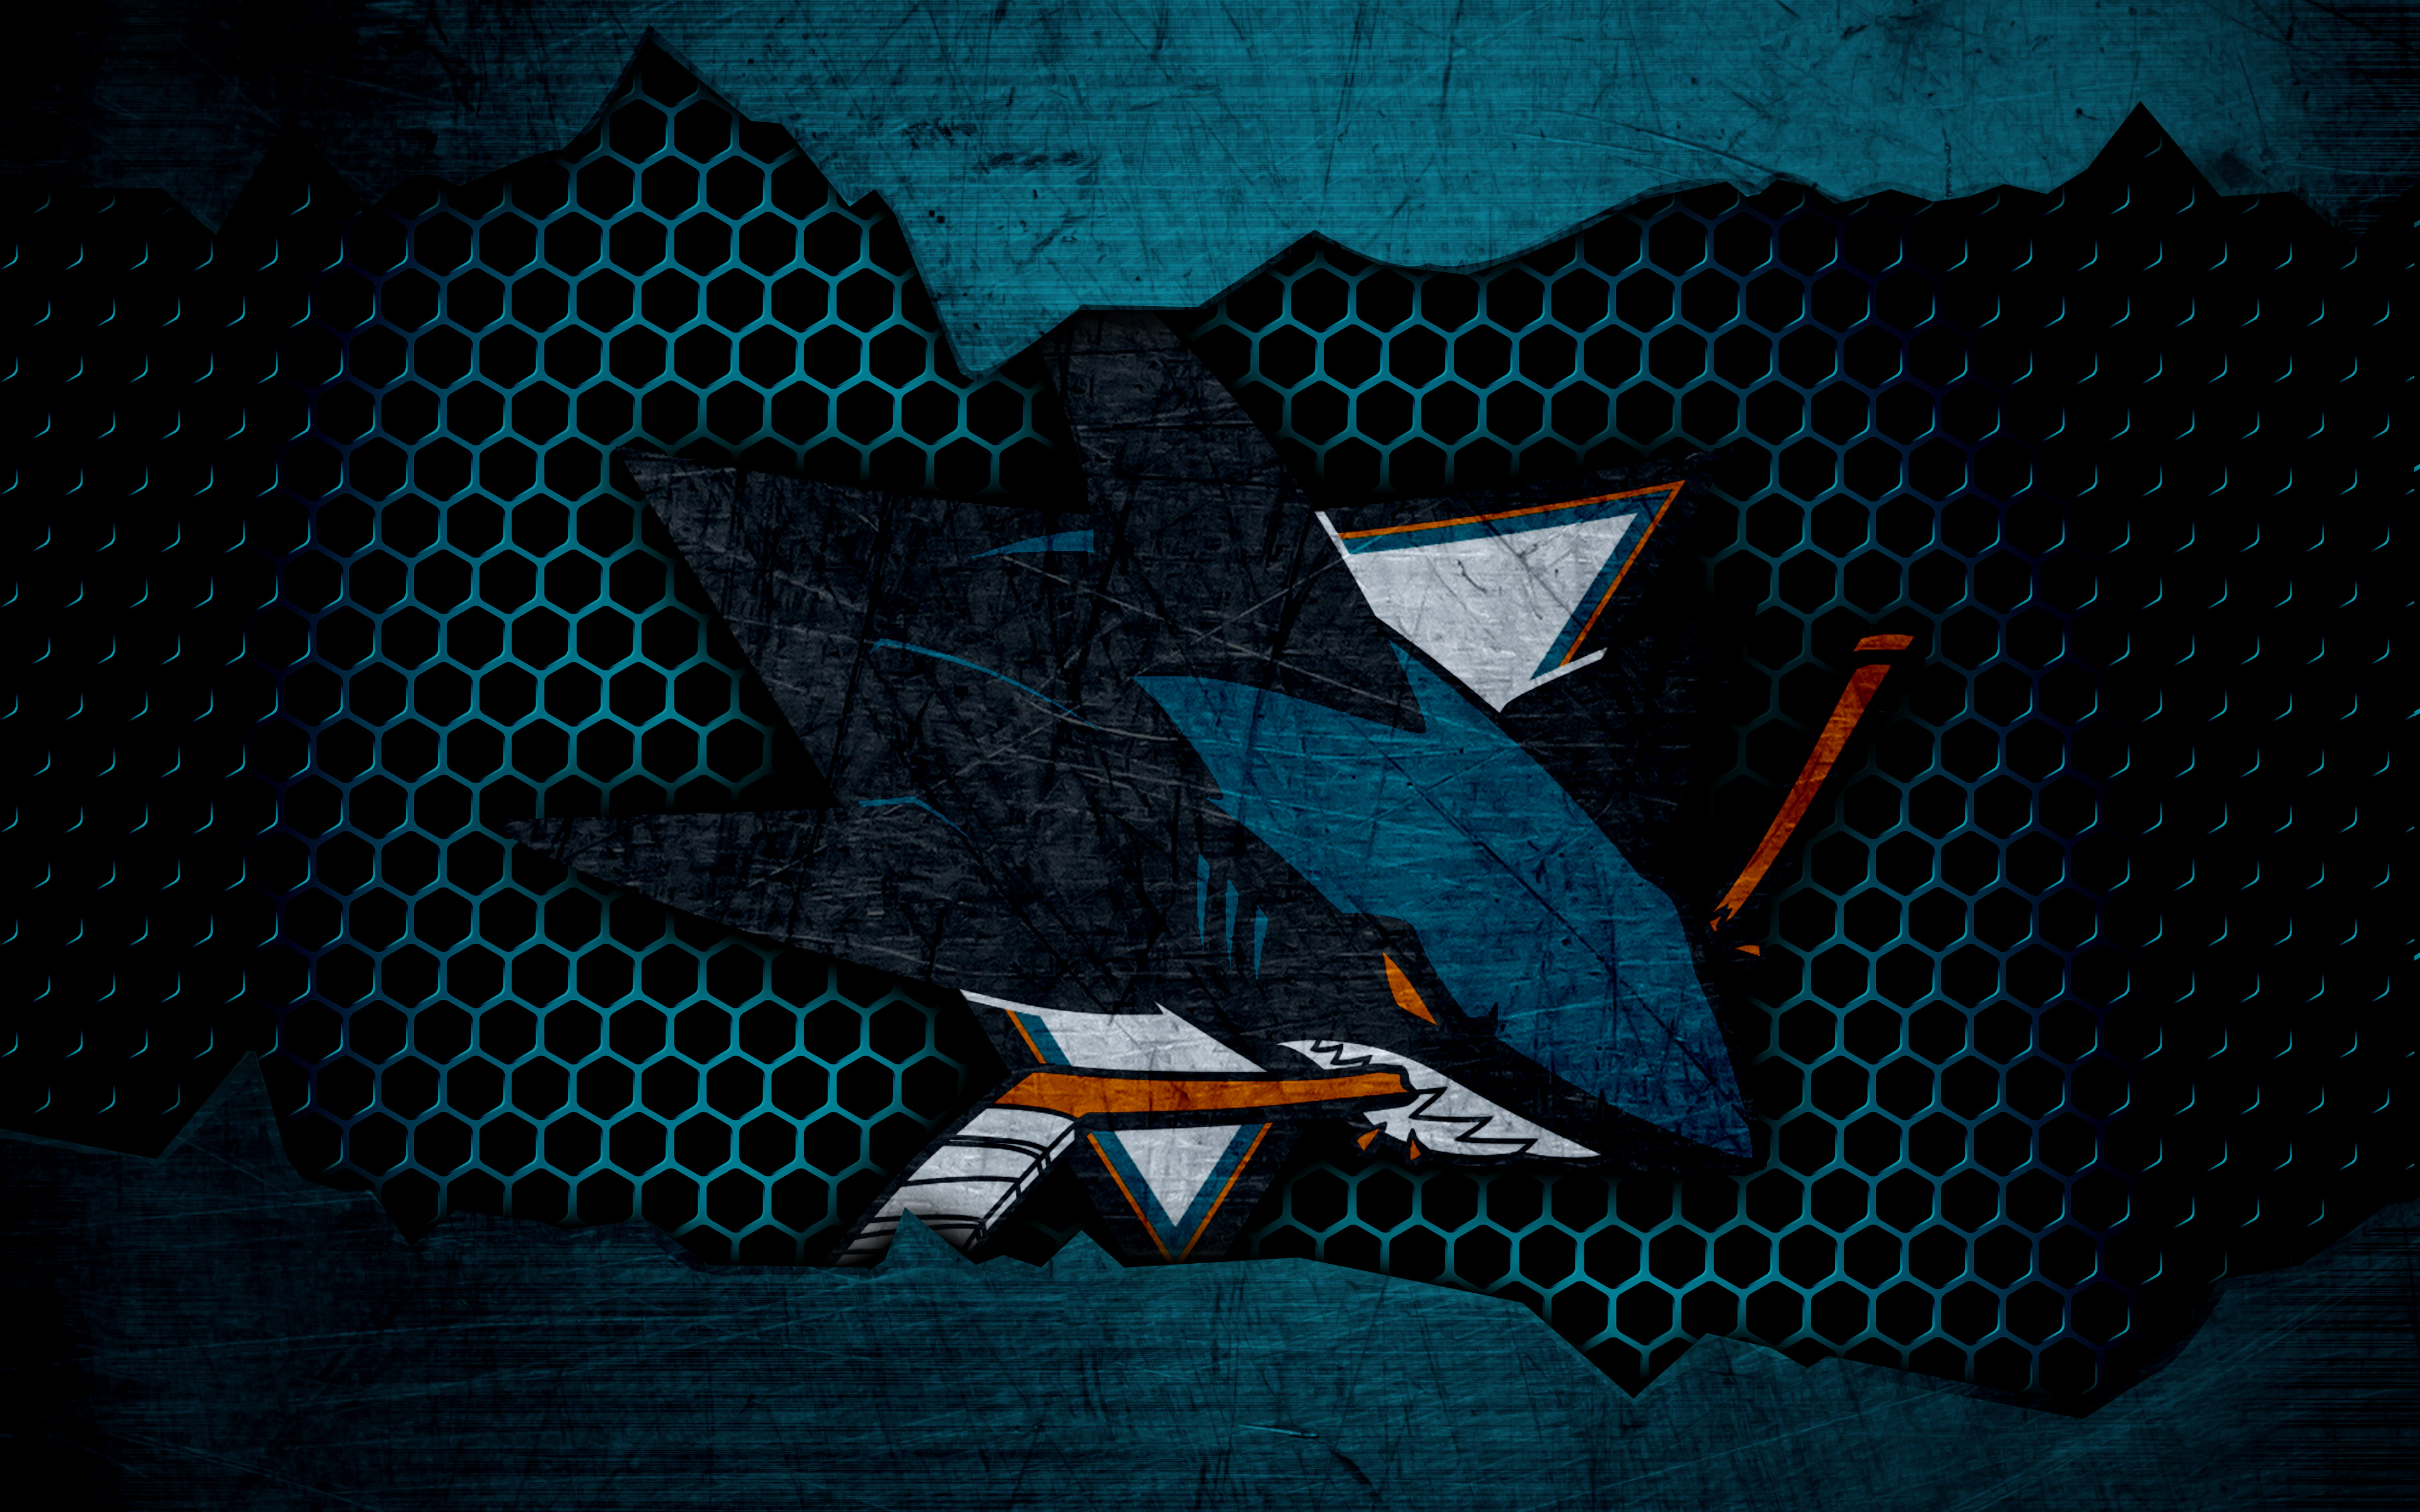 san jose sharks, sports, emblem, logo, nhl, hockey